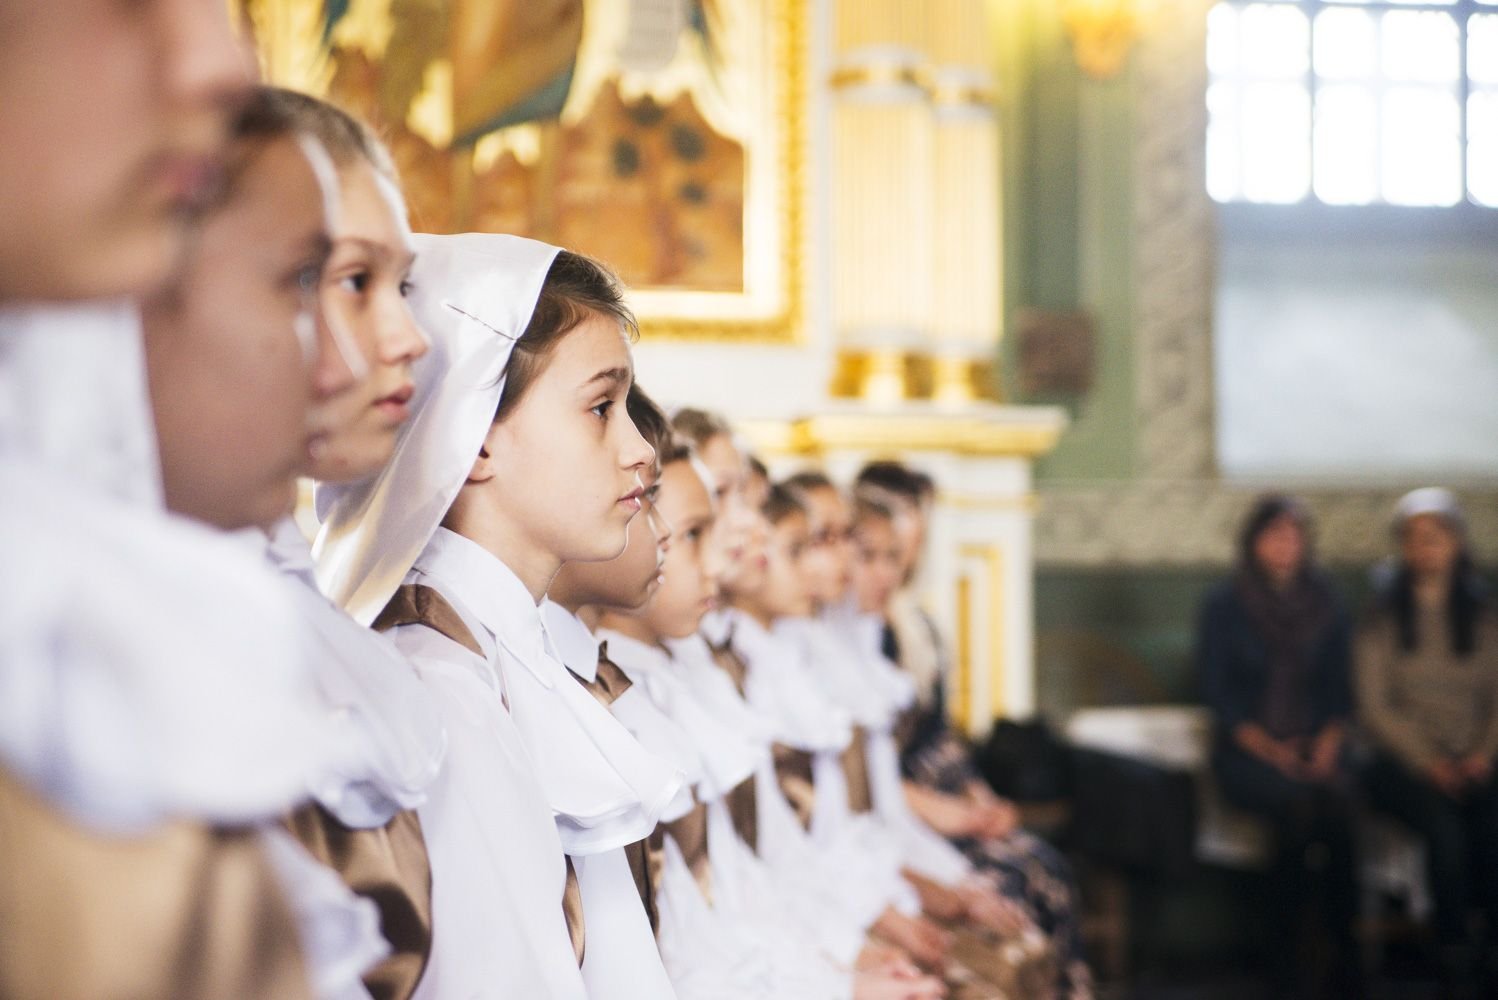 Духовное песнопение православной